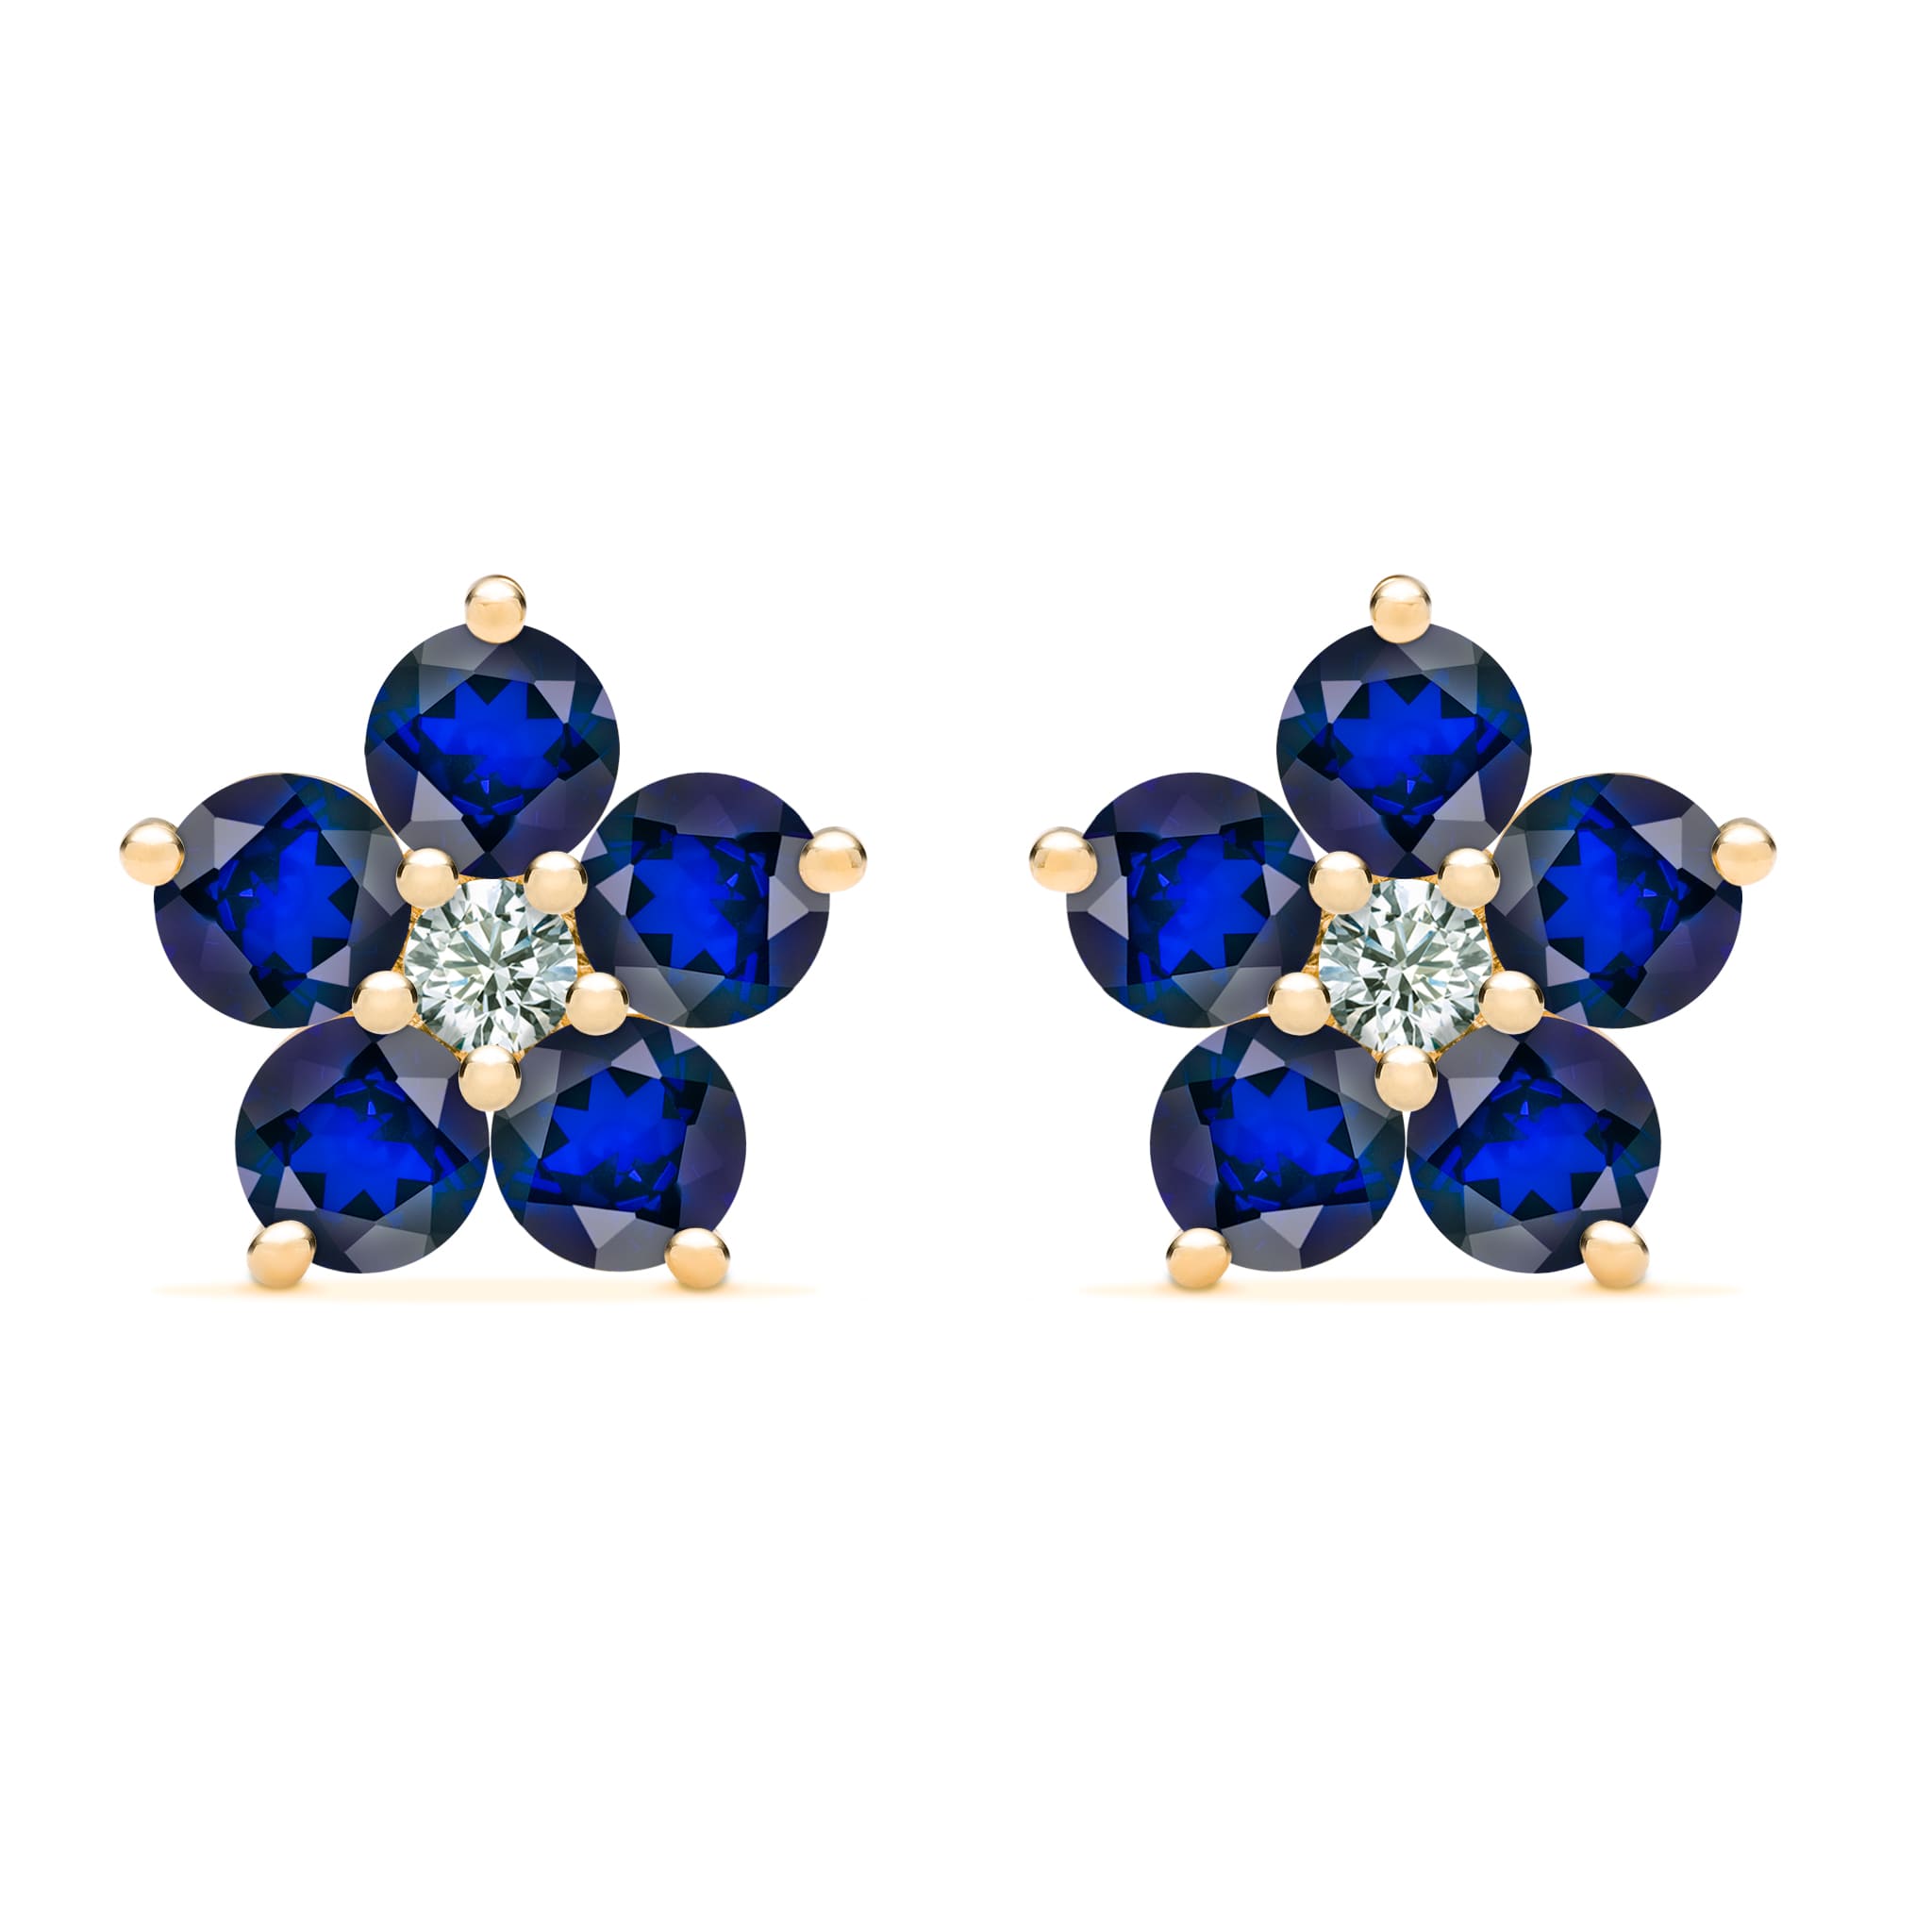 Greenwich Flower Sapphire & Diamond Earrings in 14k Gold (September)